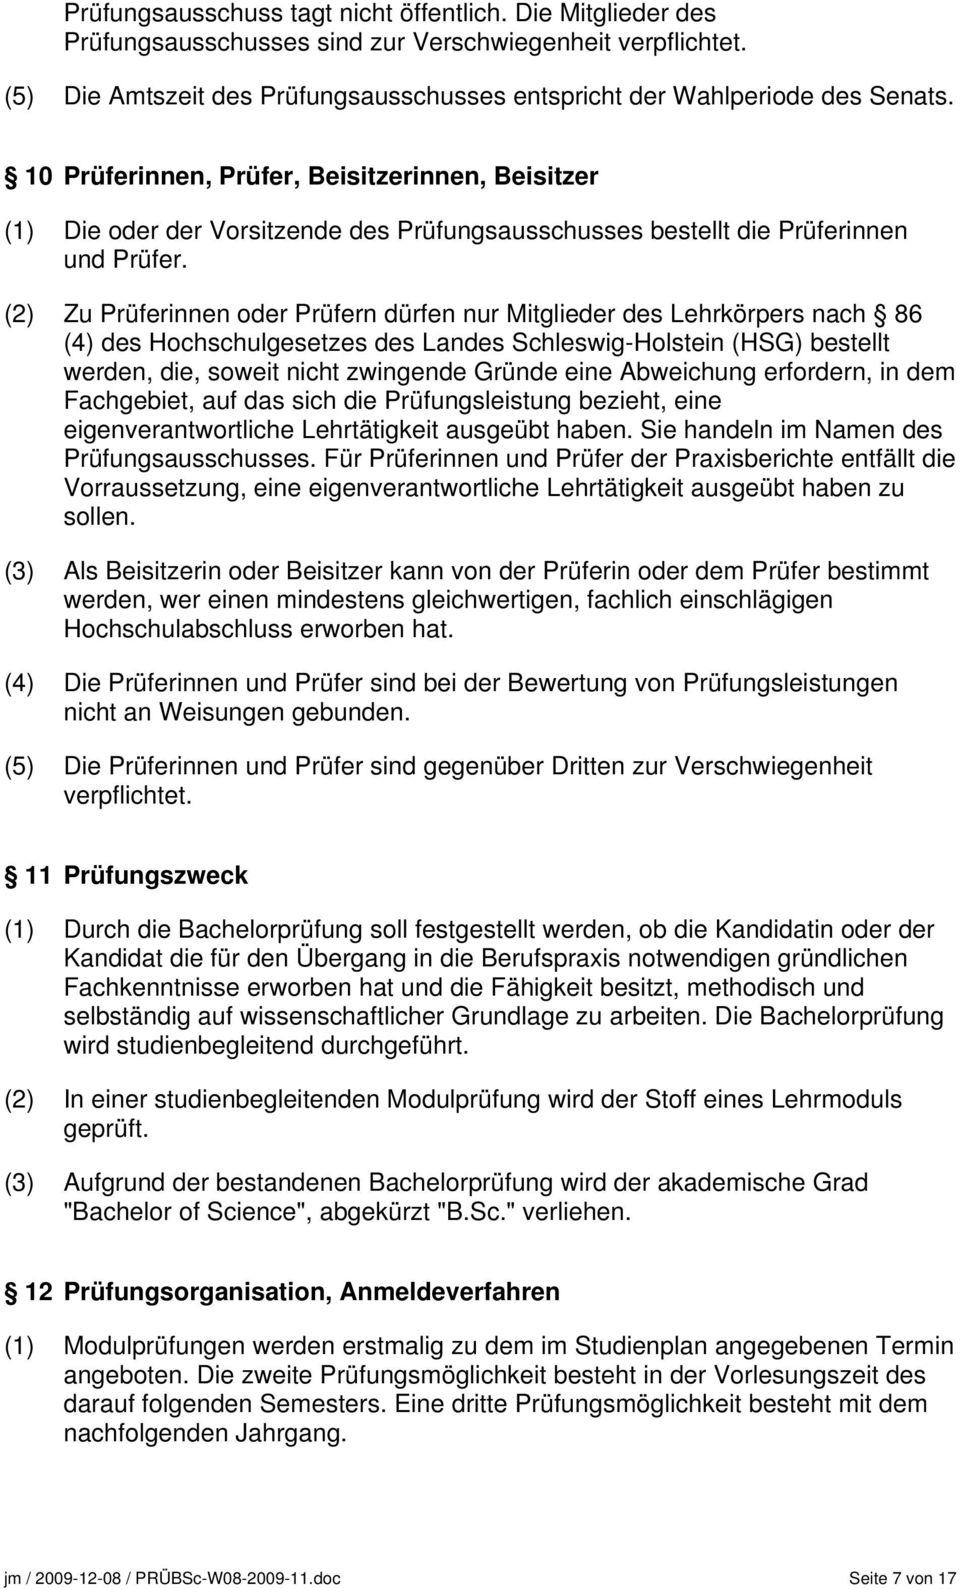 (2) Zu Prüferinnen oder Prüfern dürfen nur Mitglieder des Lehrkörpers nach 86 (4) des Hochschulgesetzes des Landes Schleswig-Holstein (HSG) bestellt werden, die, soweit nicht zwingende Gründe eine